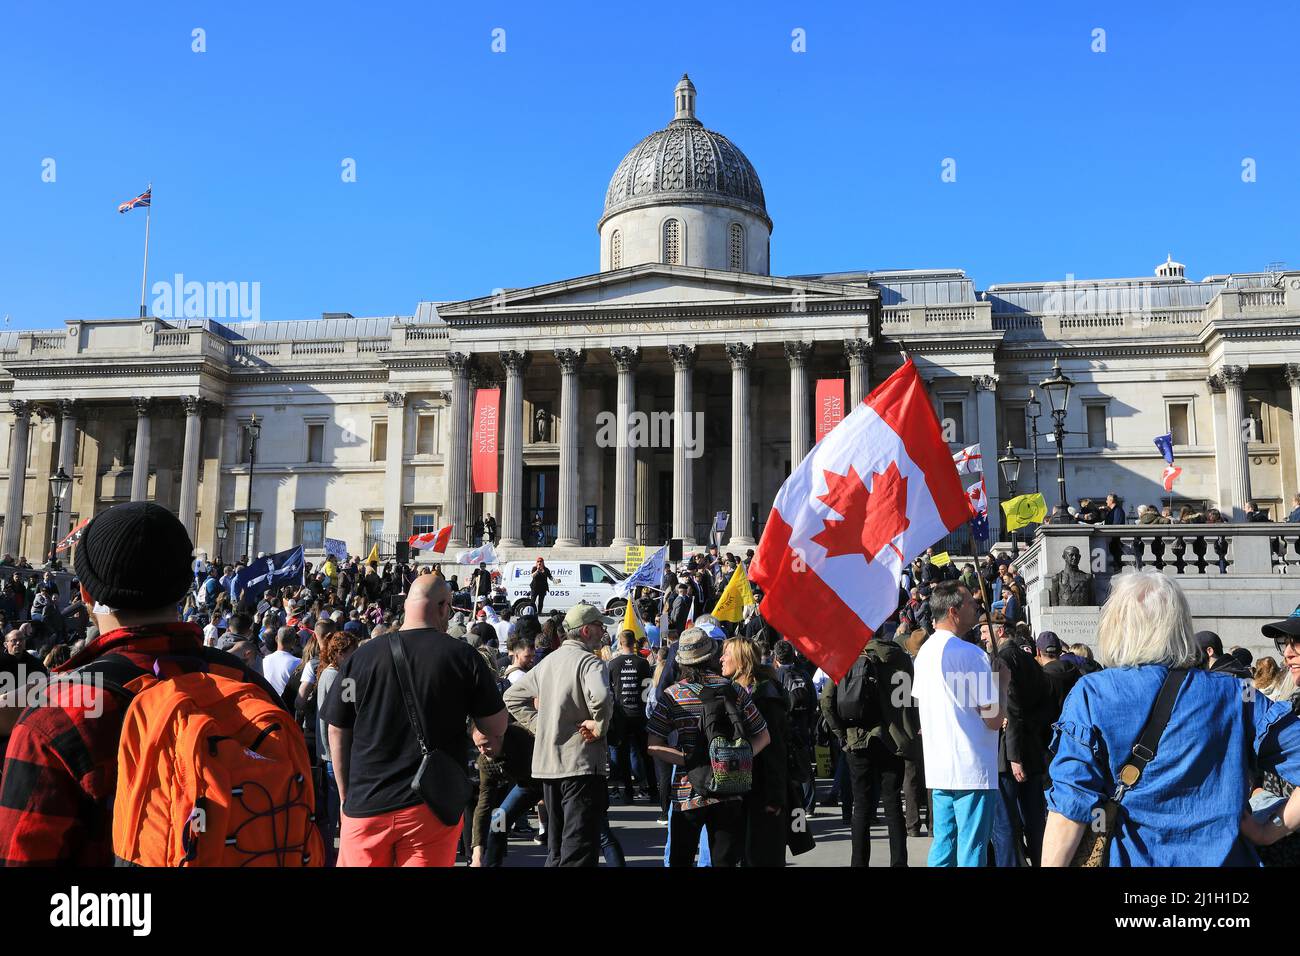 Manifestación por la libertad protestando contra diversos temas de la derecha, como las vacunas contra Covid y los mandatos, inspirados por la protesta de los camioneros canadienses, Reino Unido Foto de stock